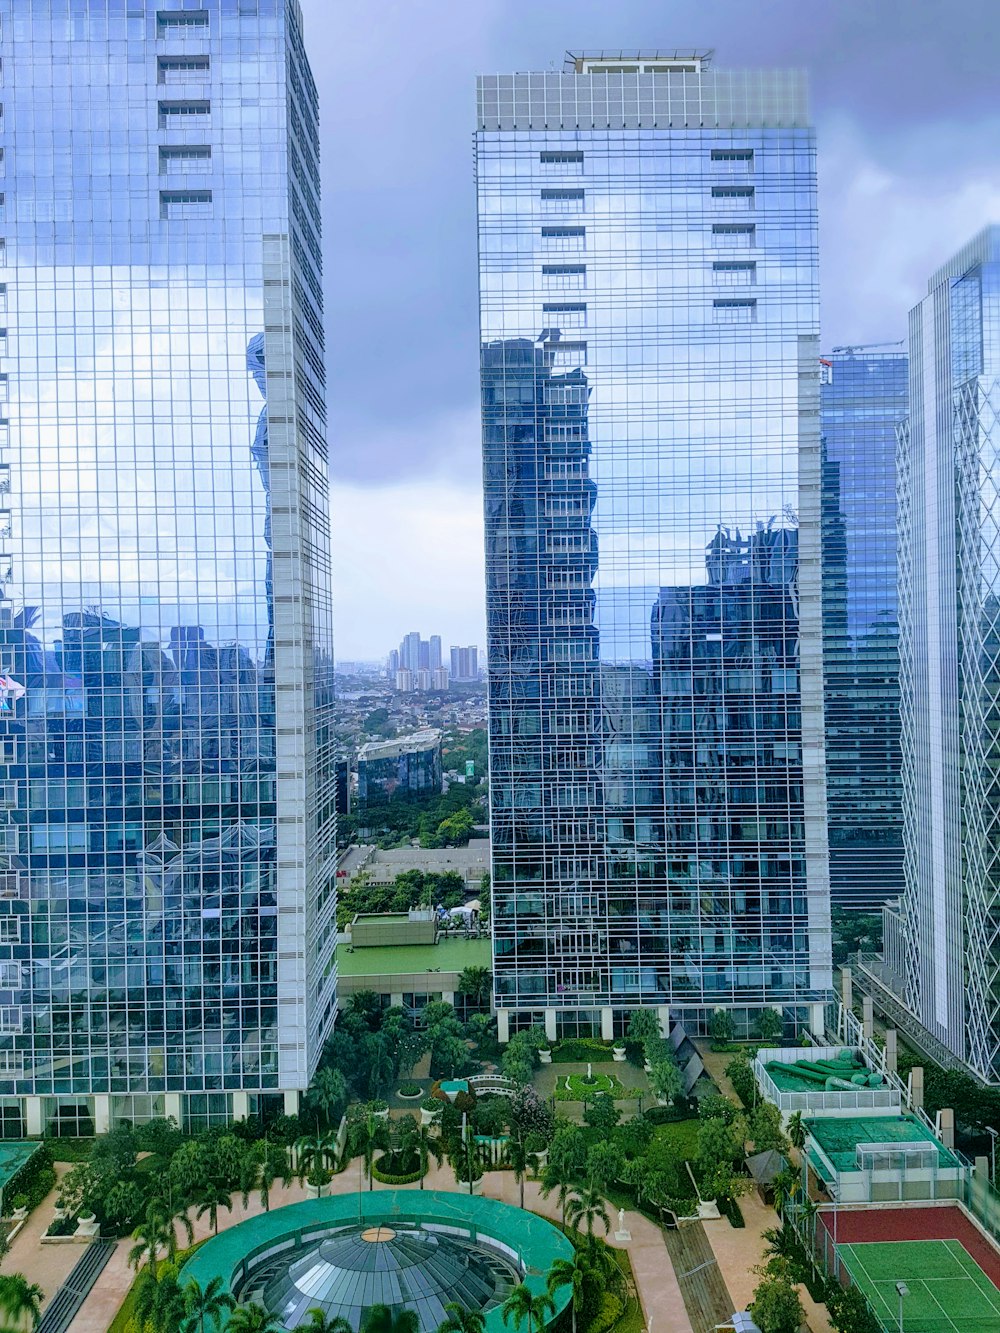 Fotografía aérea de la ciudad con edificios de gran altura bajo el cielo azul y blanco durante el día